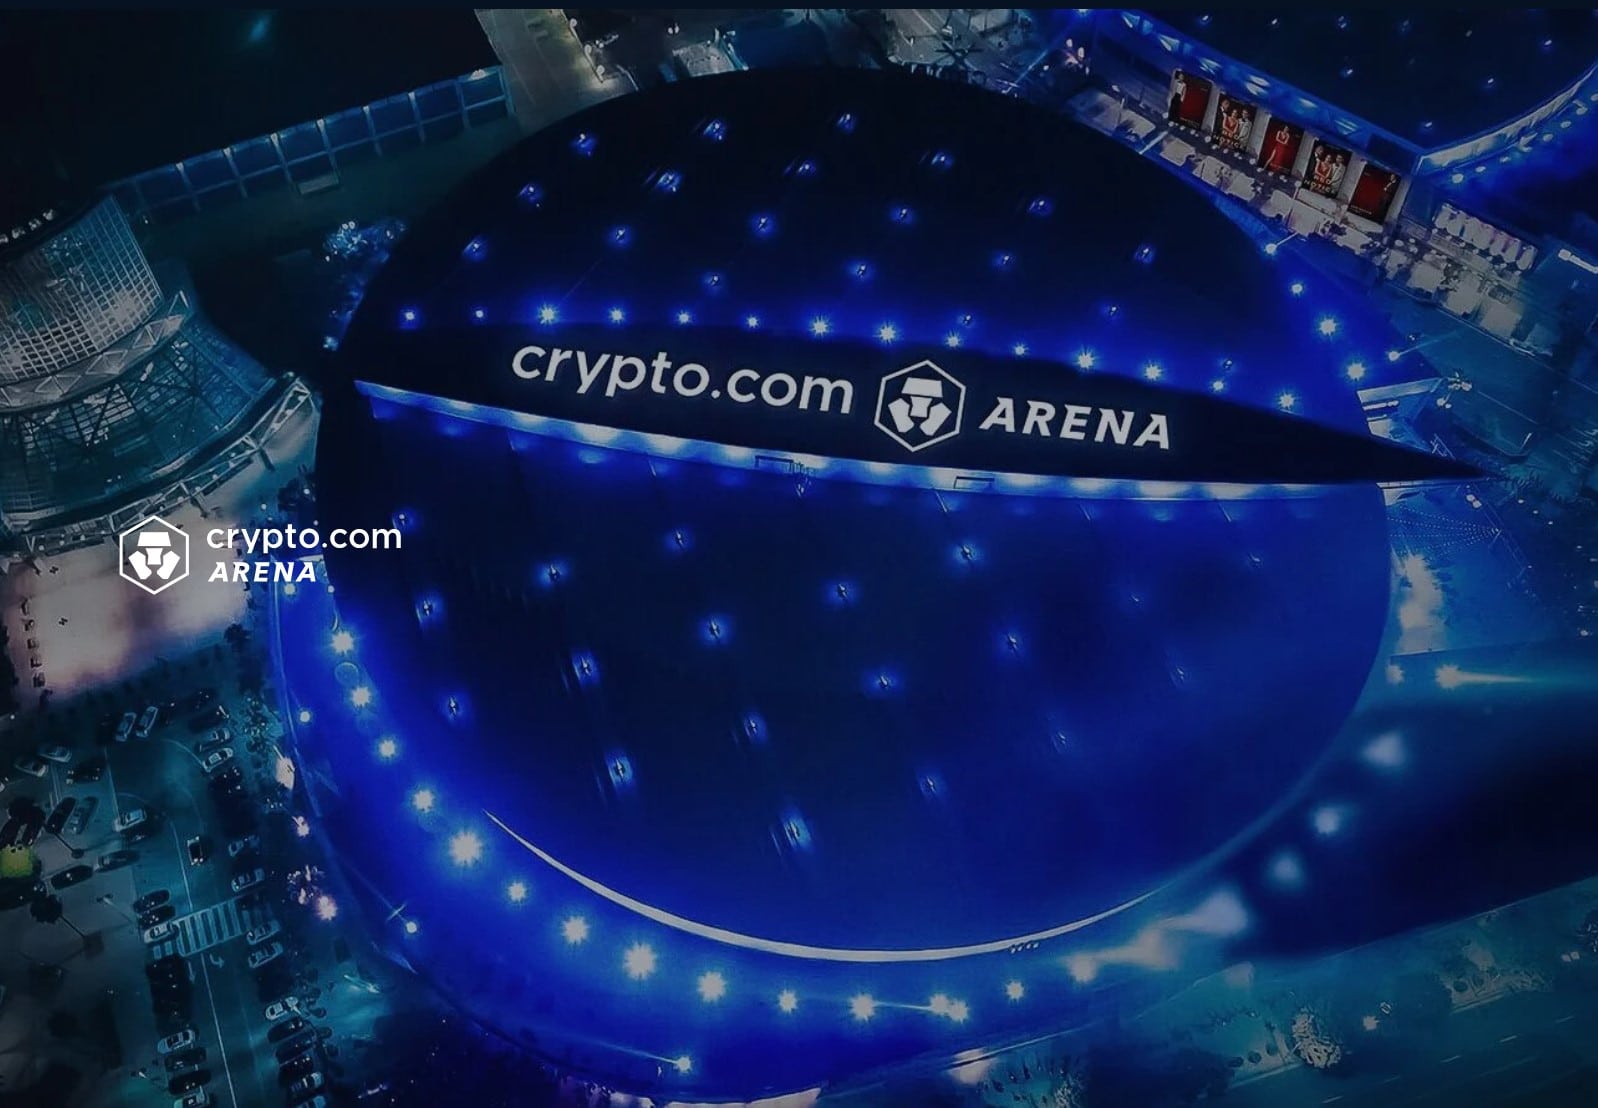 arena crypto.com